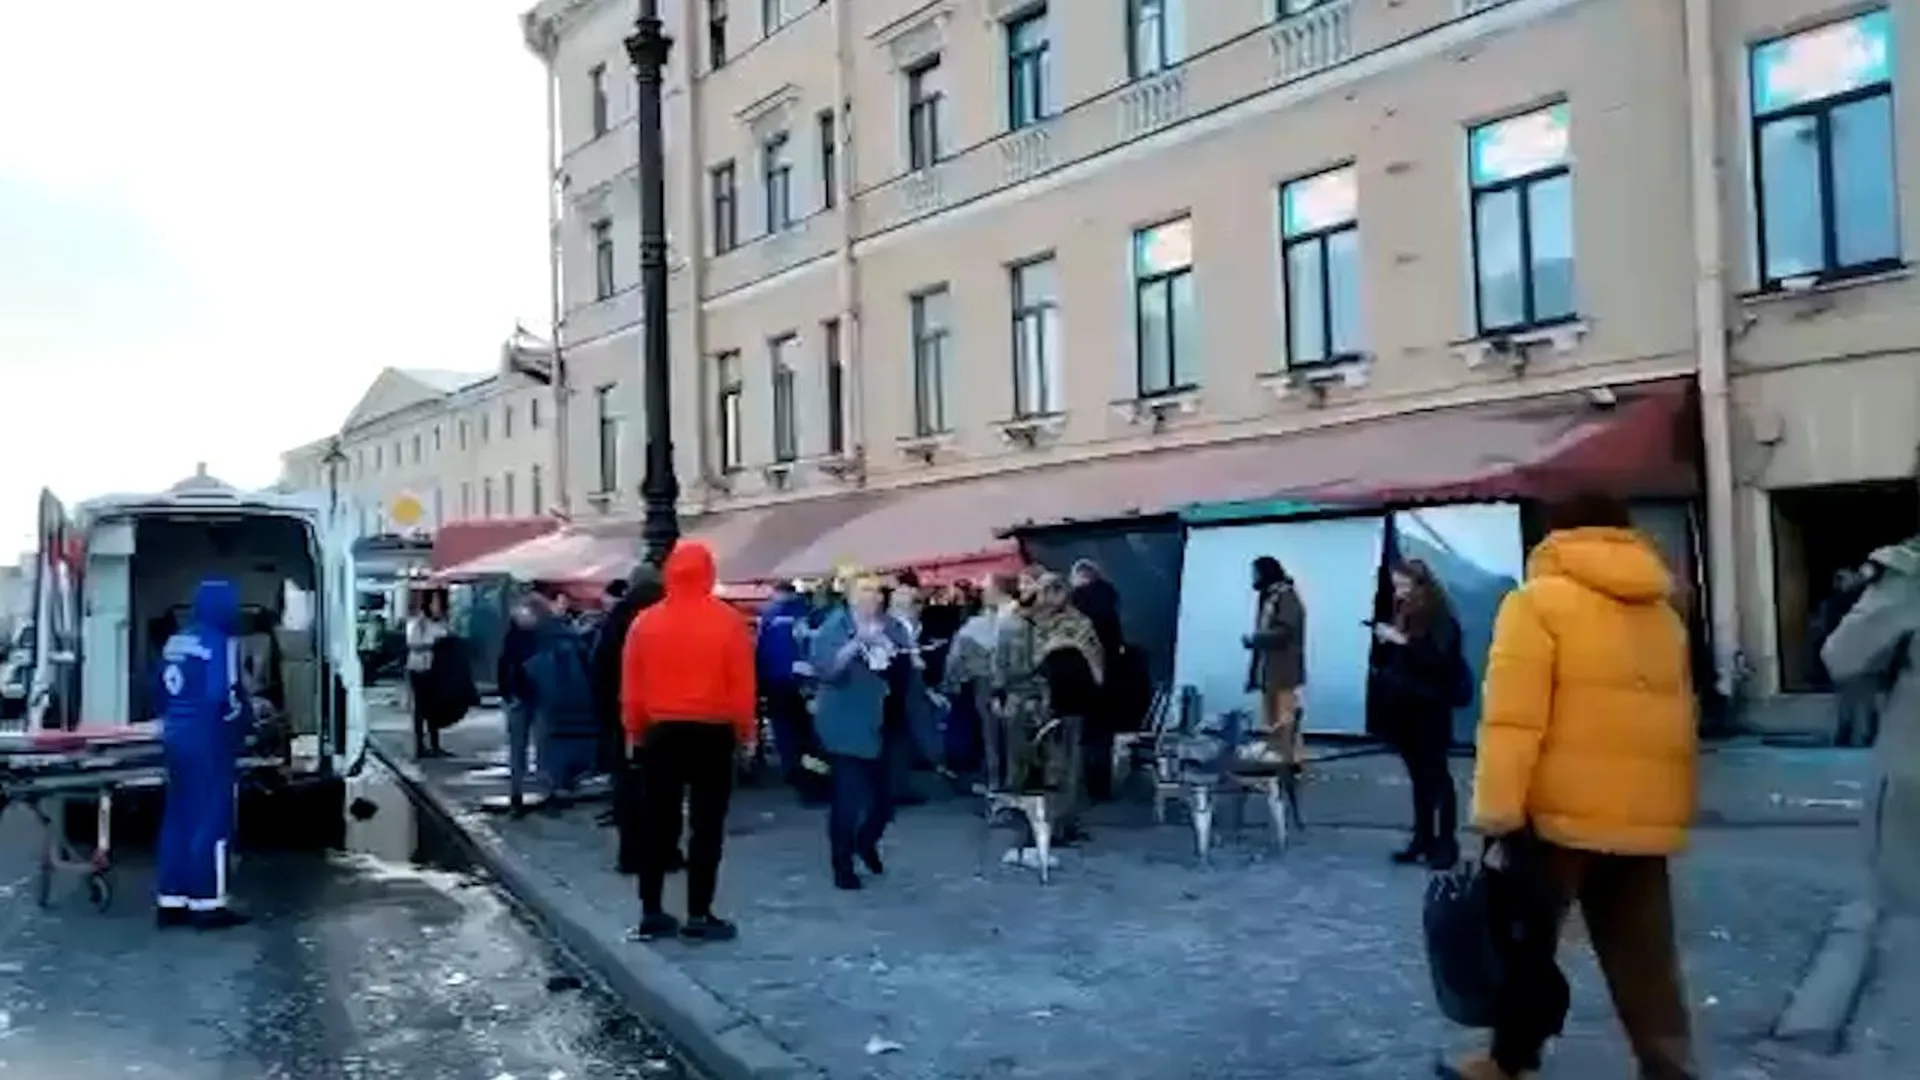 Группа пикник не пострадала в теракте. Взорвали кафе в Санкт-Петербурге 2 апреля. В Петербурге взорвали кафе. Взрыв в кафе в Санкт-Петербурге фото.